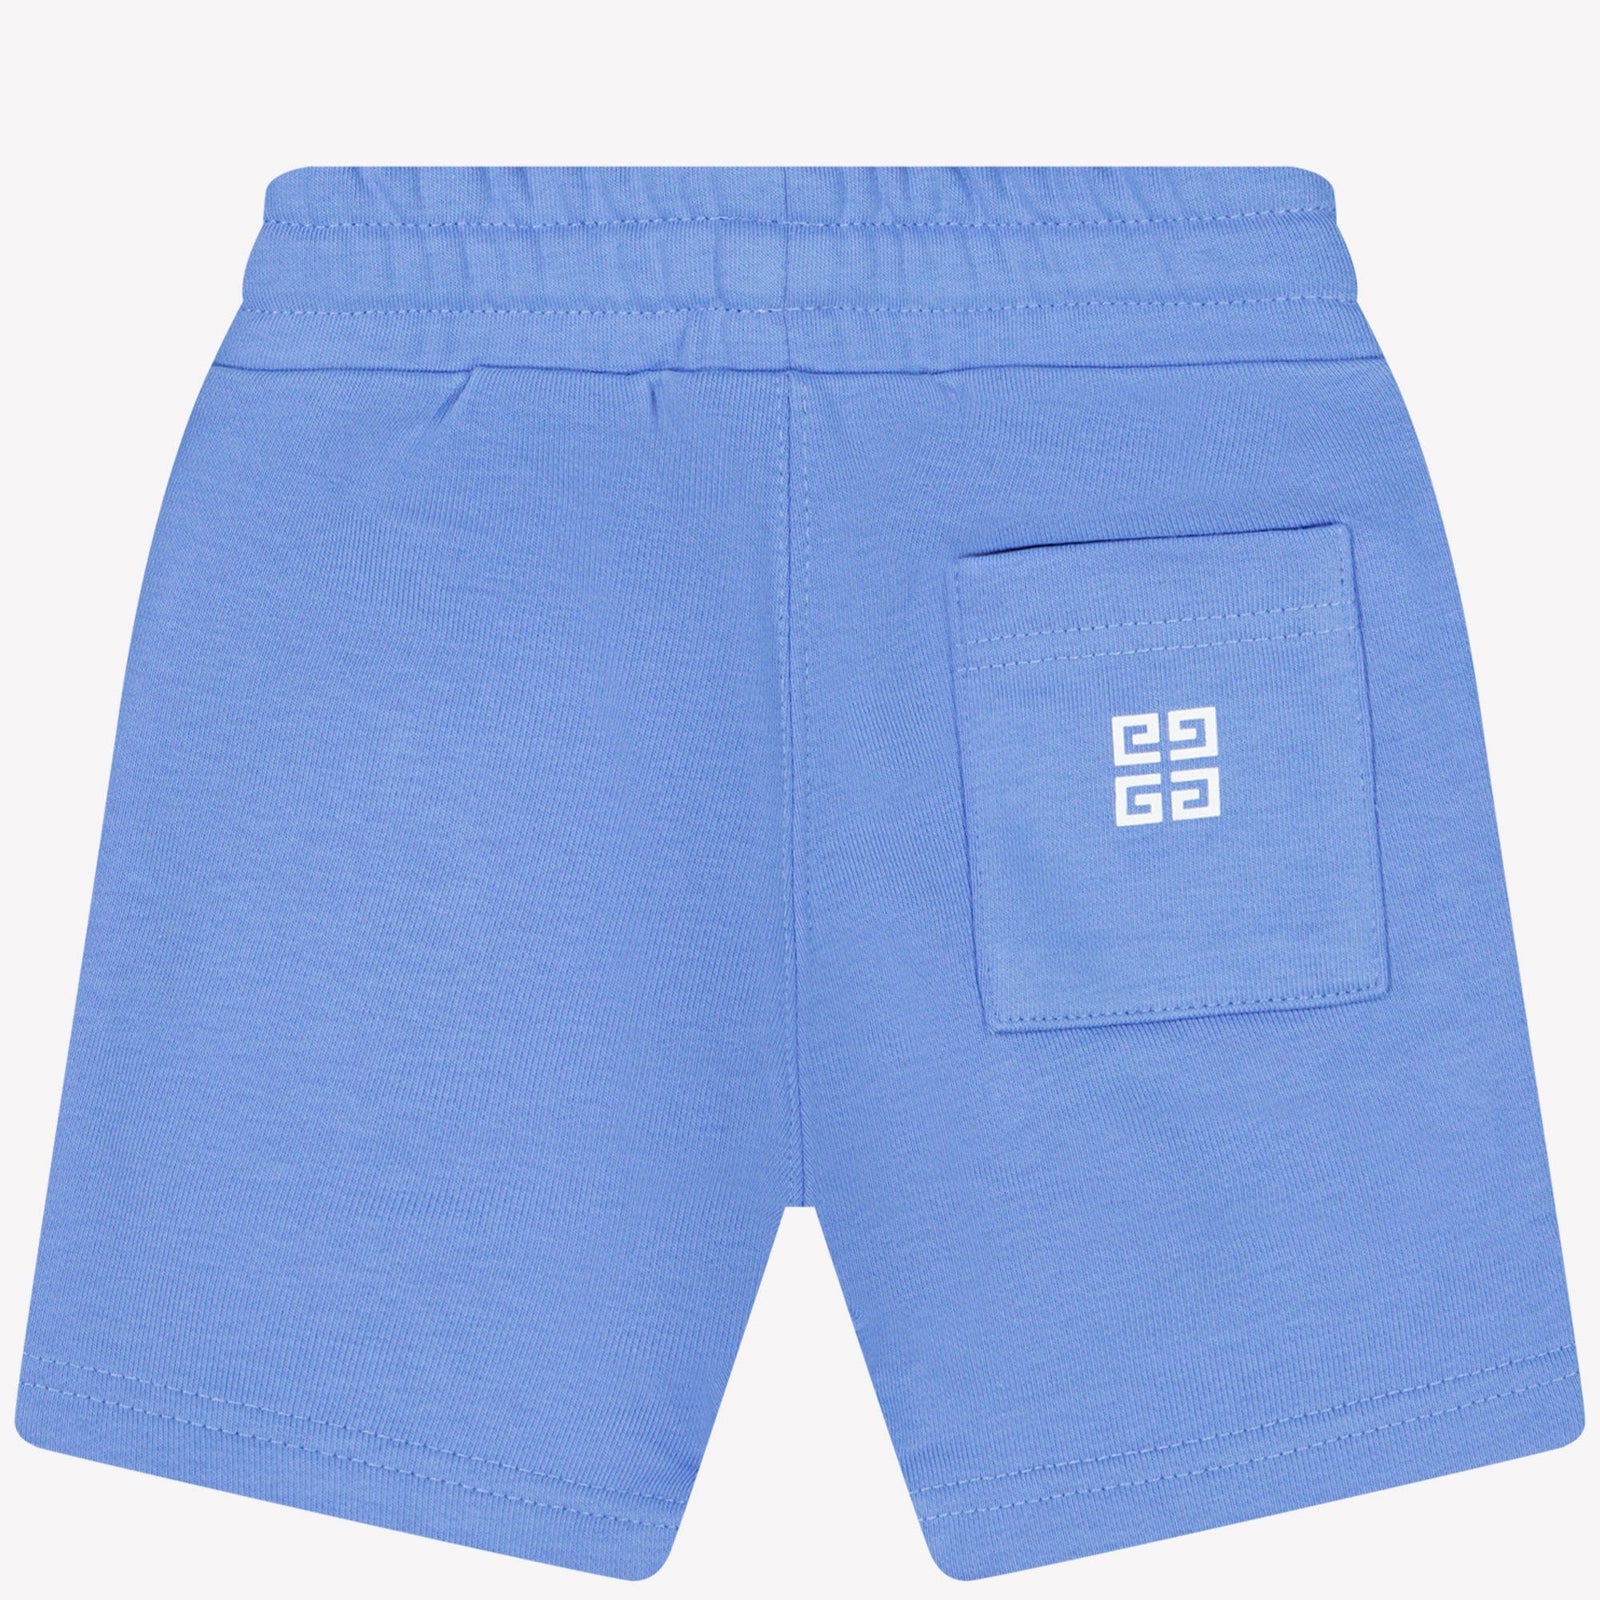 Givenchy Baby Jongens Shorts Blauw 6 mnd